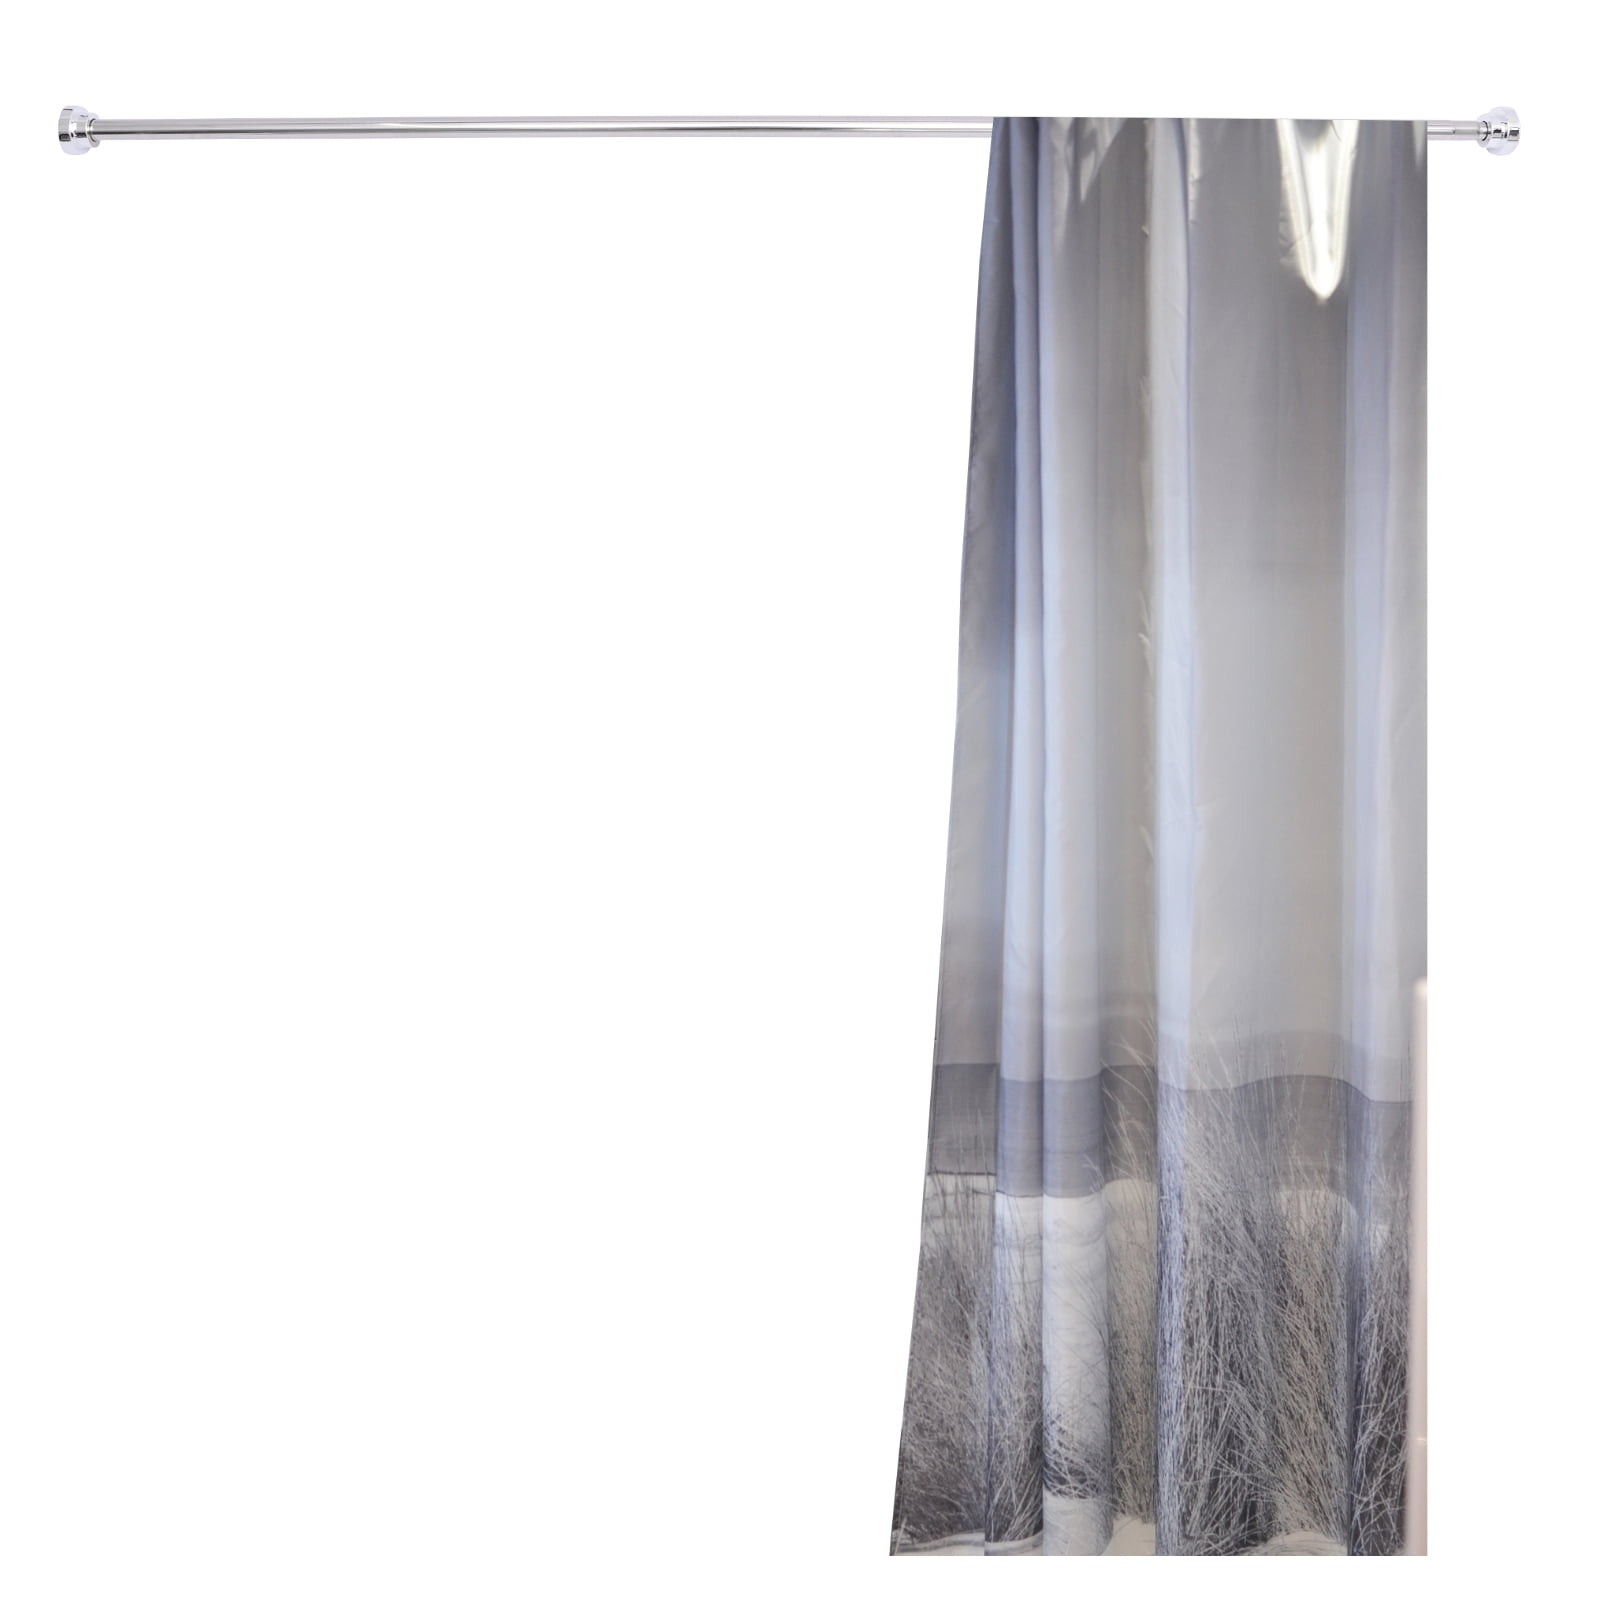 70-120cm Telescopic Extendable Shower Curtain Rail Pole Rod Window Bath Chrome 